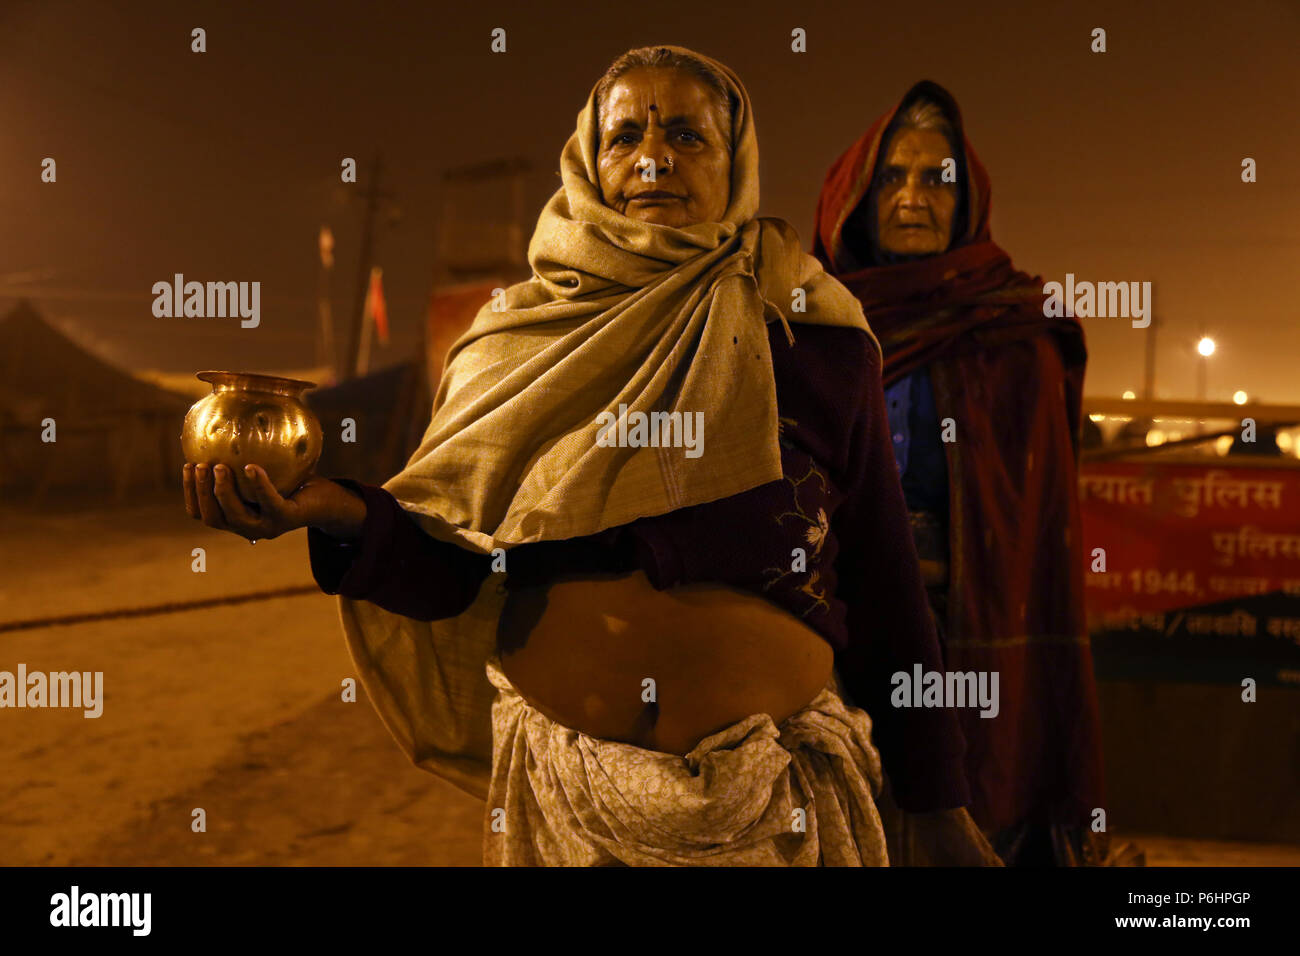 Deux femmes hindoues sont fiers de présenter une cruche contenant de l'eau bénite du Gange pendant le pèlerinage Maha Kumbh Mela 2013 à Mumbai , Inde Banque D'Images